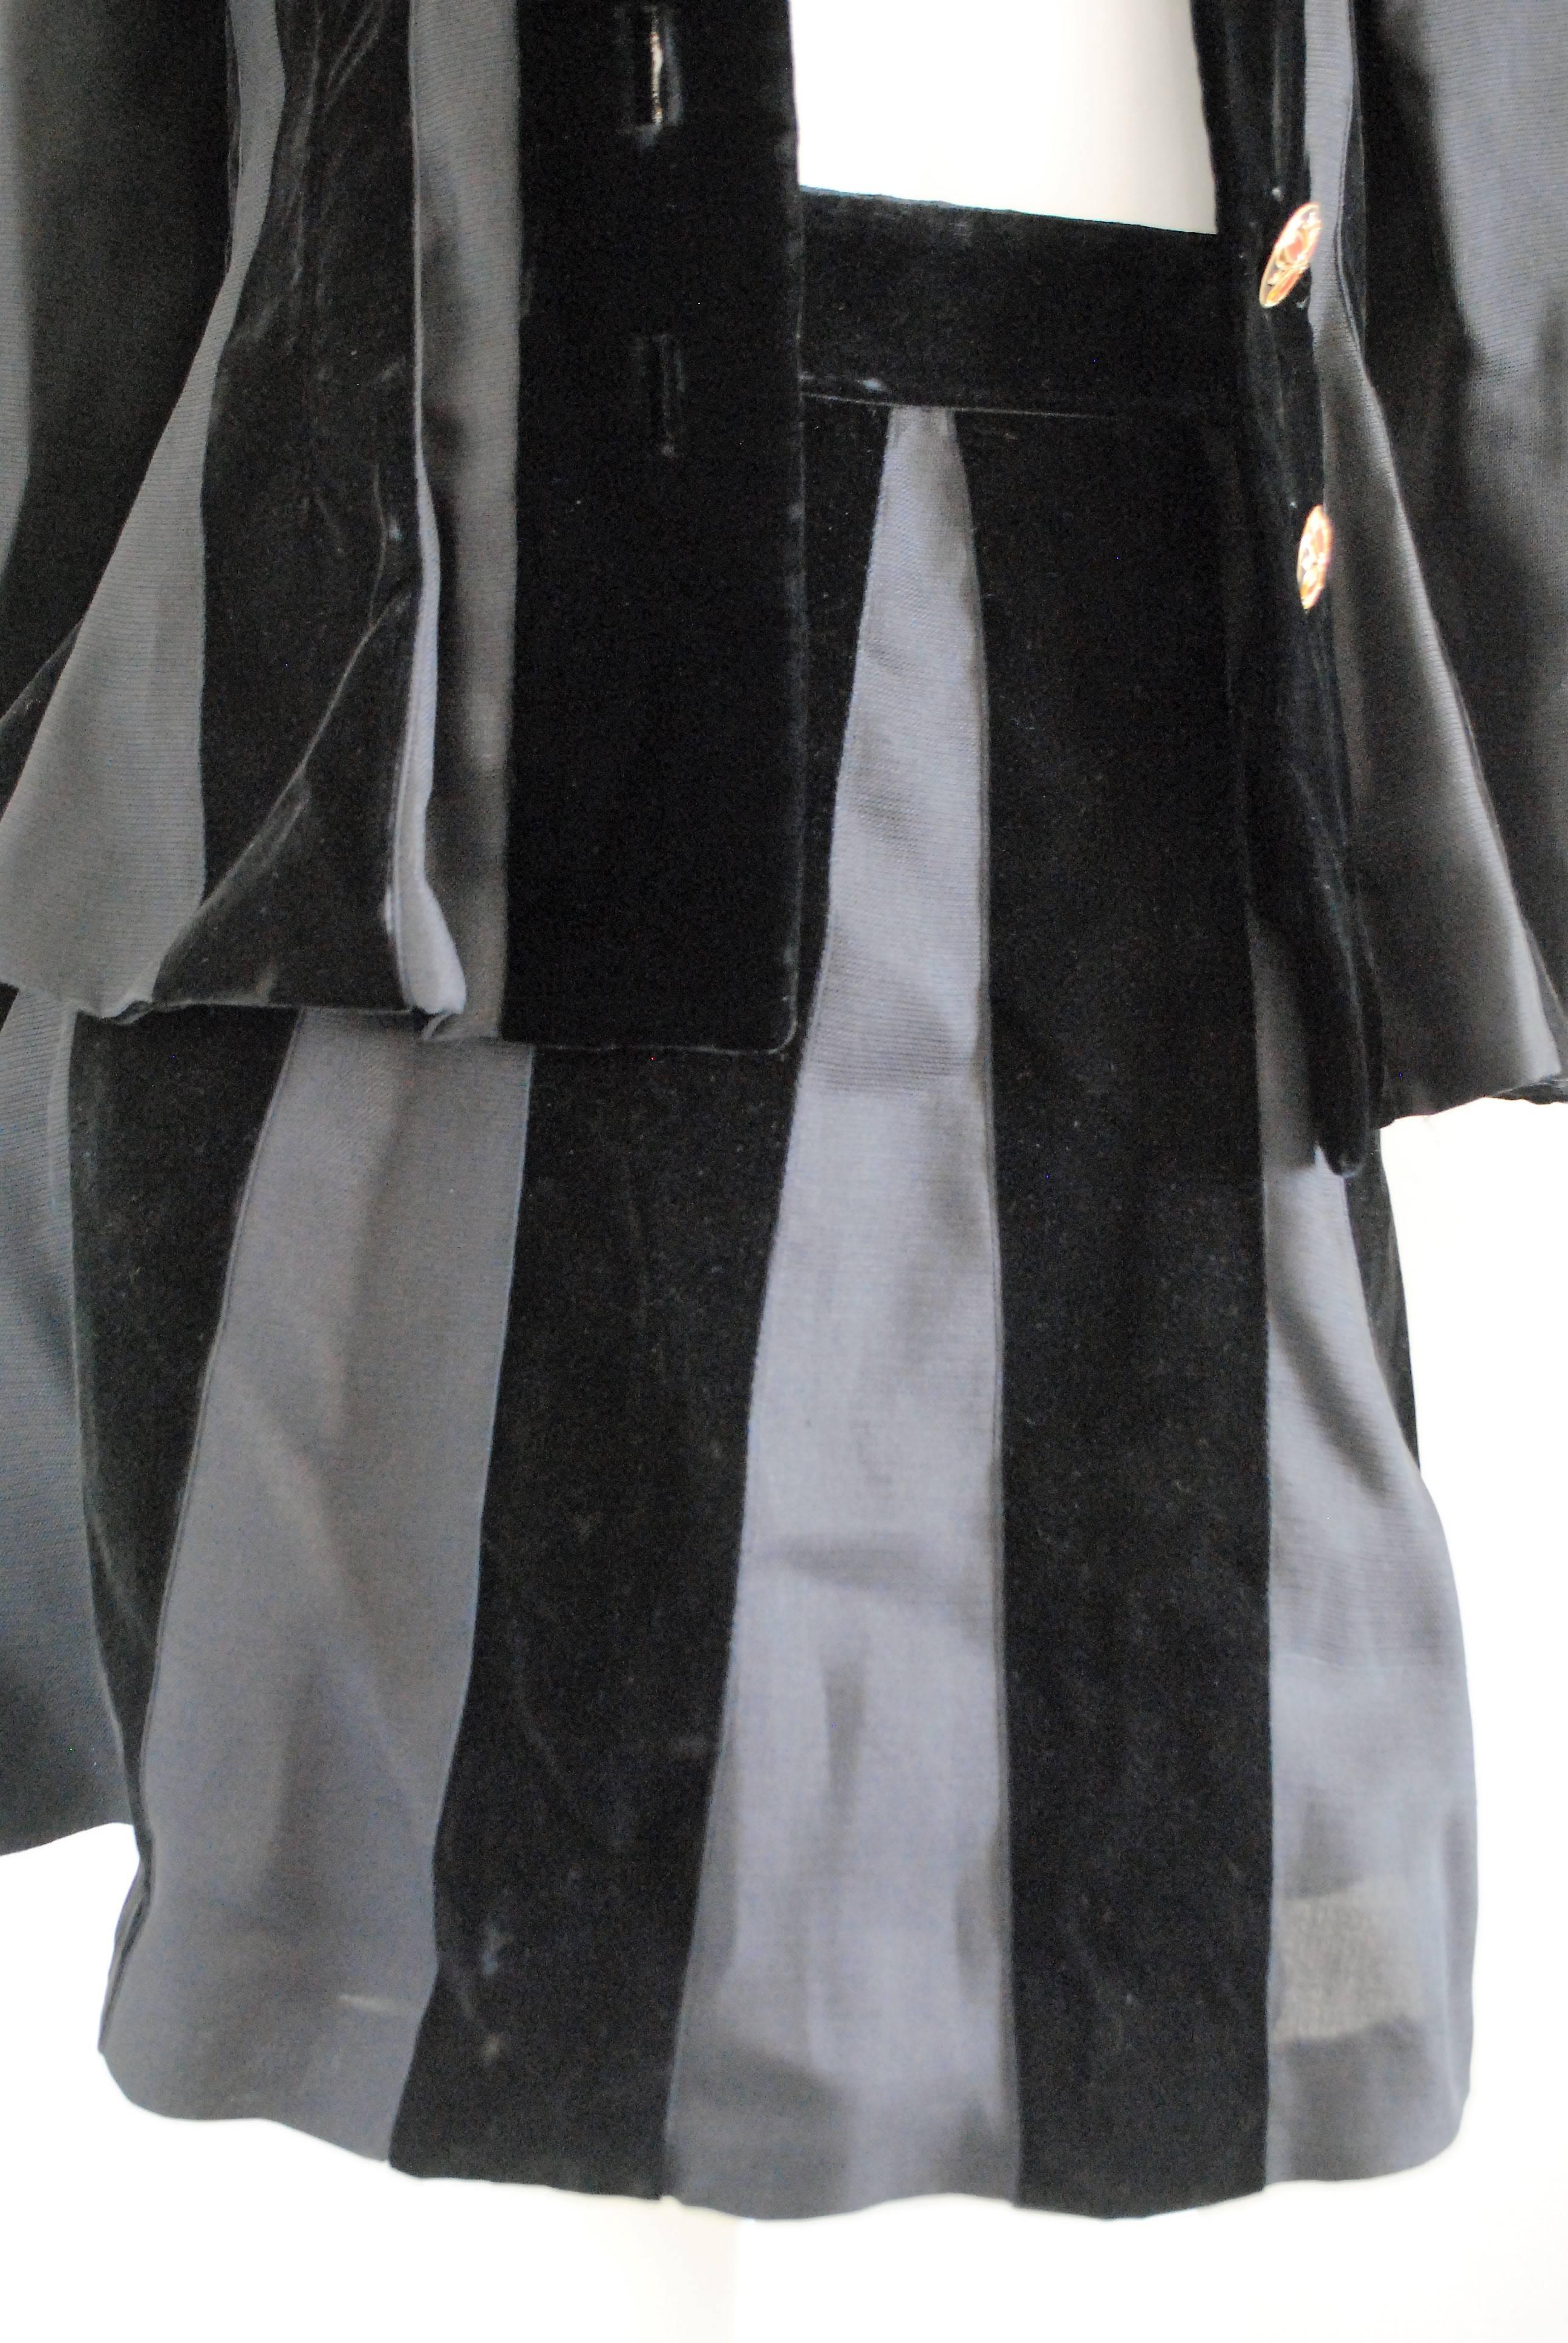 Black Yves Saint Laurent Rive Gauche Skirt Suit